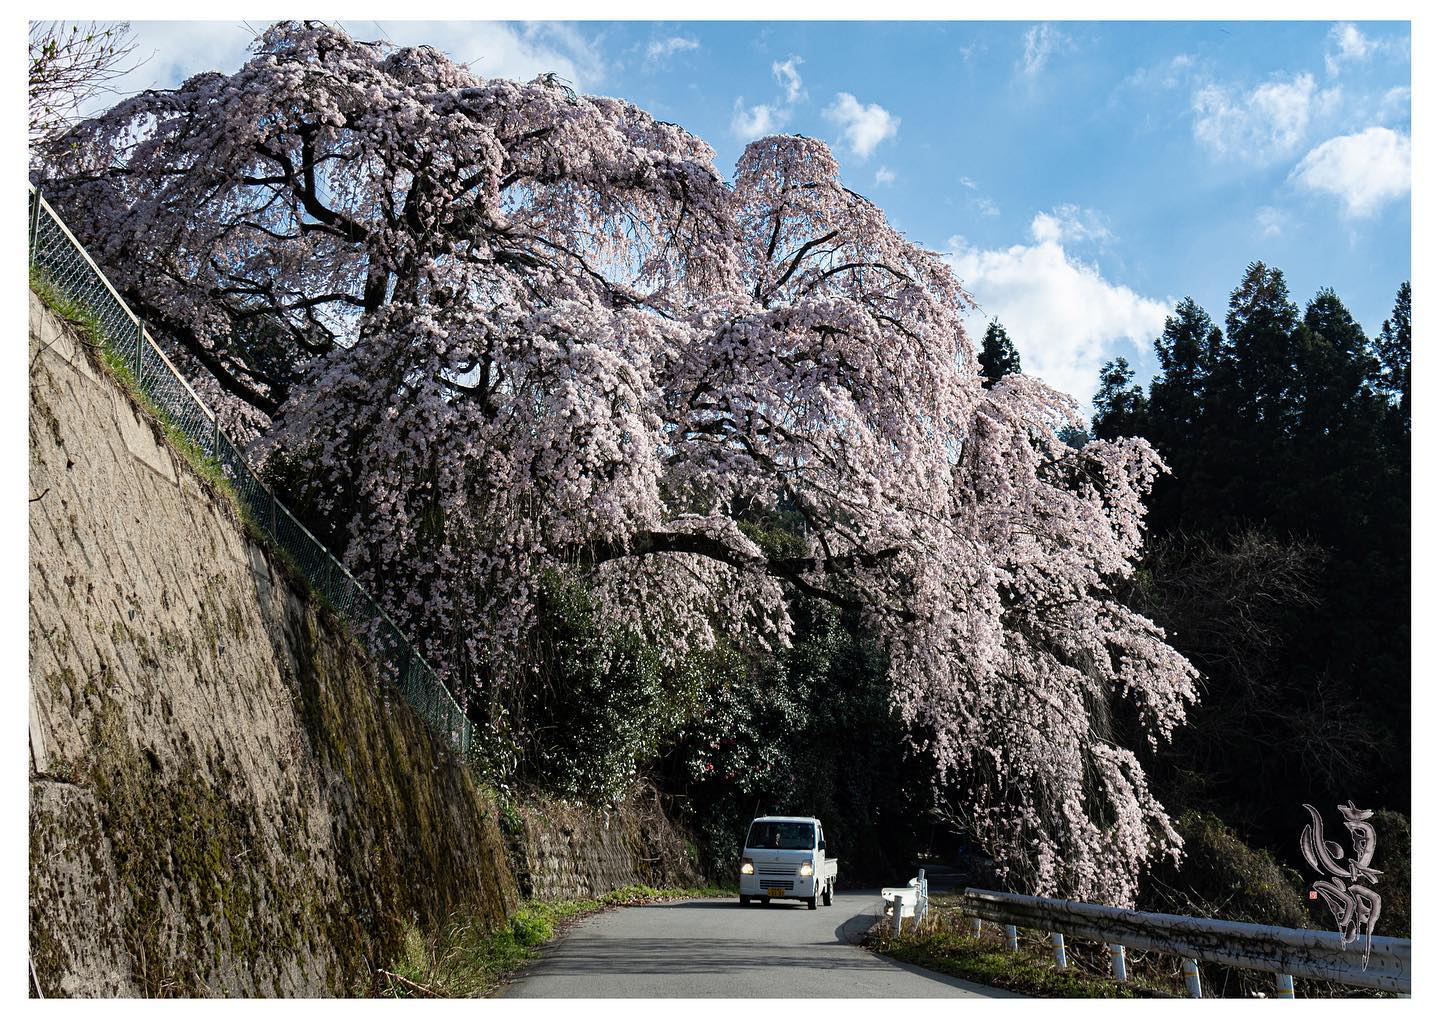 Instagram更新しました。 eg. おはようございます。「想いをカタチに」 和歌山のカメラマン、写真屋・はれのひ工房の末藤（スエトウ）です。4月にお持ちさせて頂くプリントは桜の写真三枚です。五条市のしだれ桜雨山の郷の桜並木中津川の石垣にかかる山桜です。今年は桜も足が早くてもう終わりつつありますが、桜散ってから始まる事が多いですよね。スタートを告げる桜、残り8ヵ月がよい方向に向きますように。写真屋・はれのひ工房はご希望の方にお店や病院やご家庭に飾る月々の写真を配達させて頂いています。また遠方の方には郵送させて頂いていますのでお気軽にお問い合わせ下さい。 – from Instagram